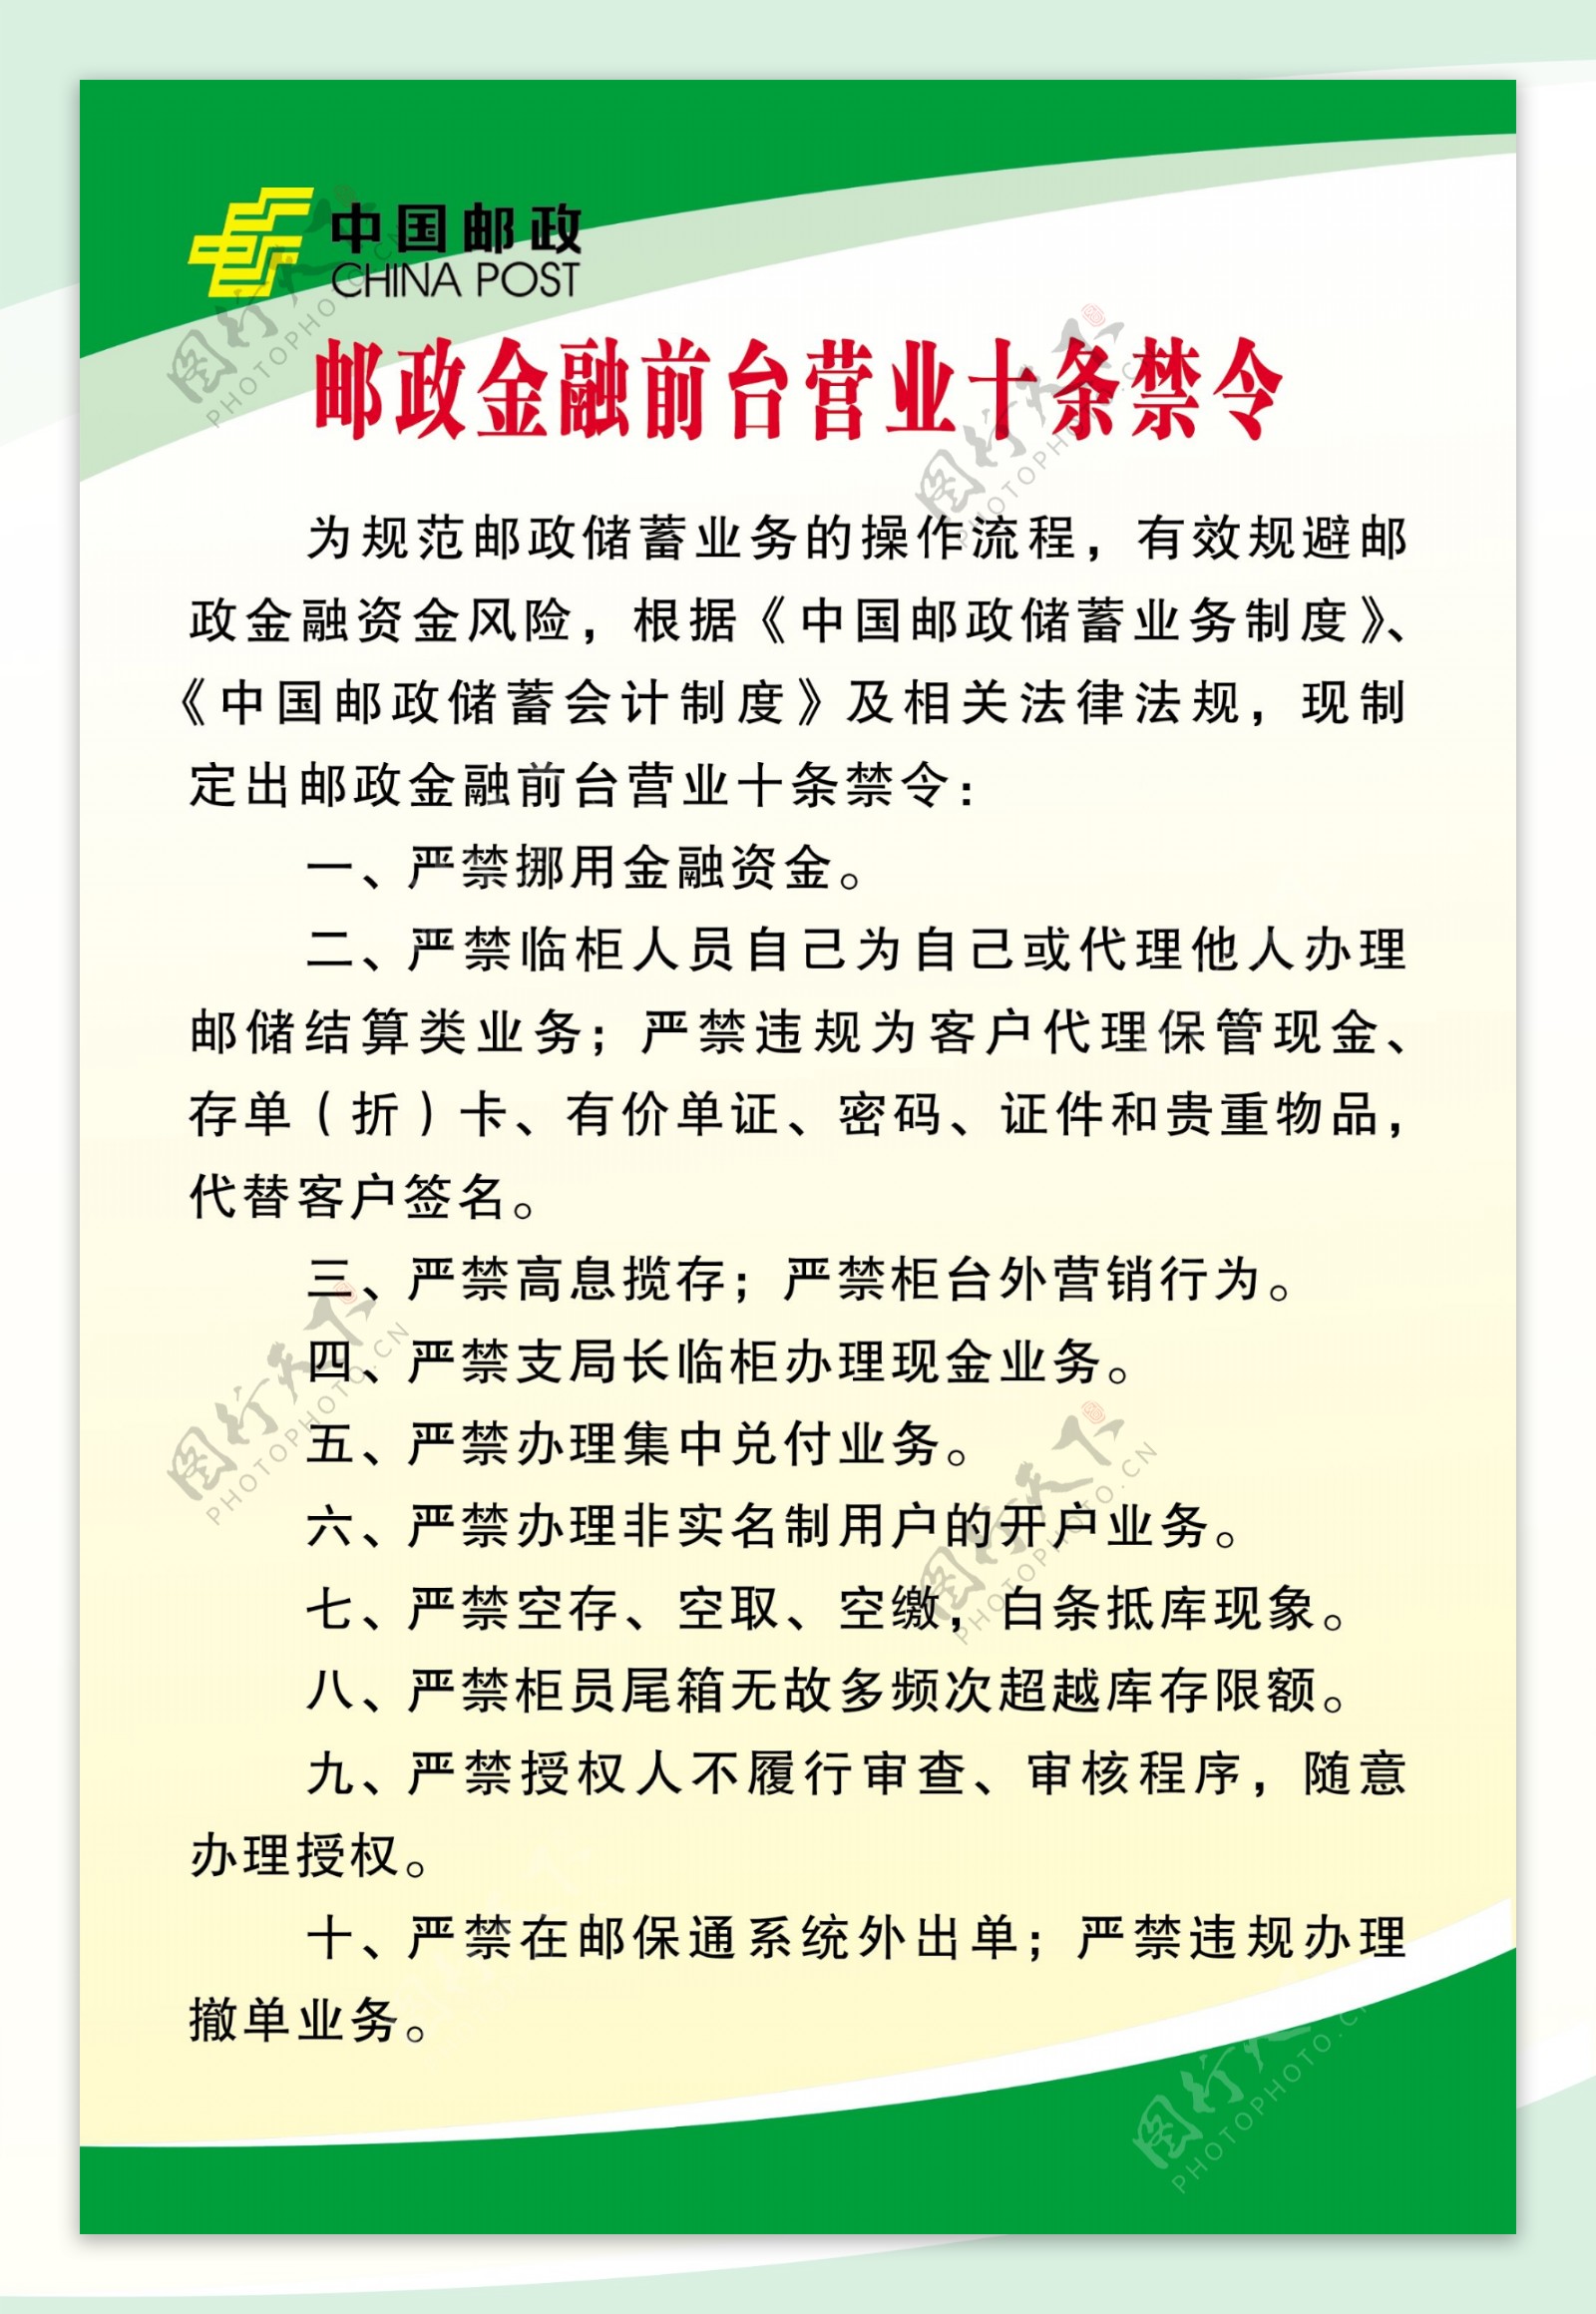 中国邮政金融前台十条禁令展板图片